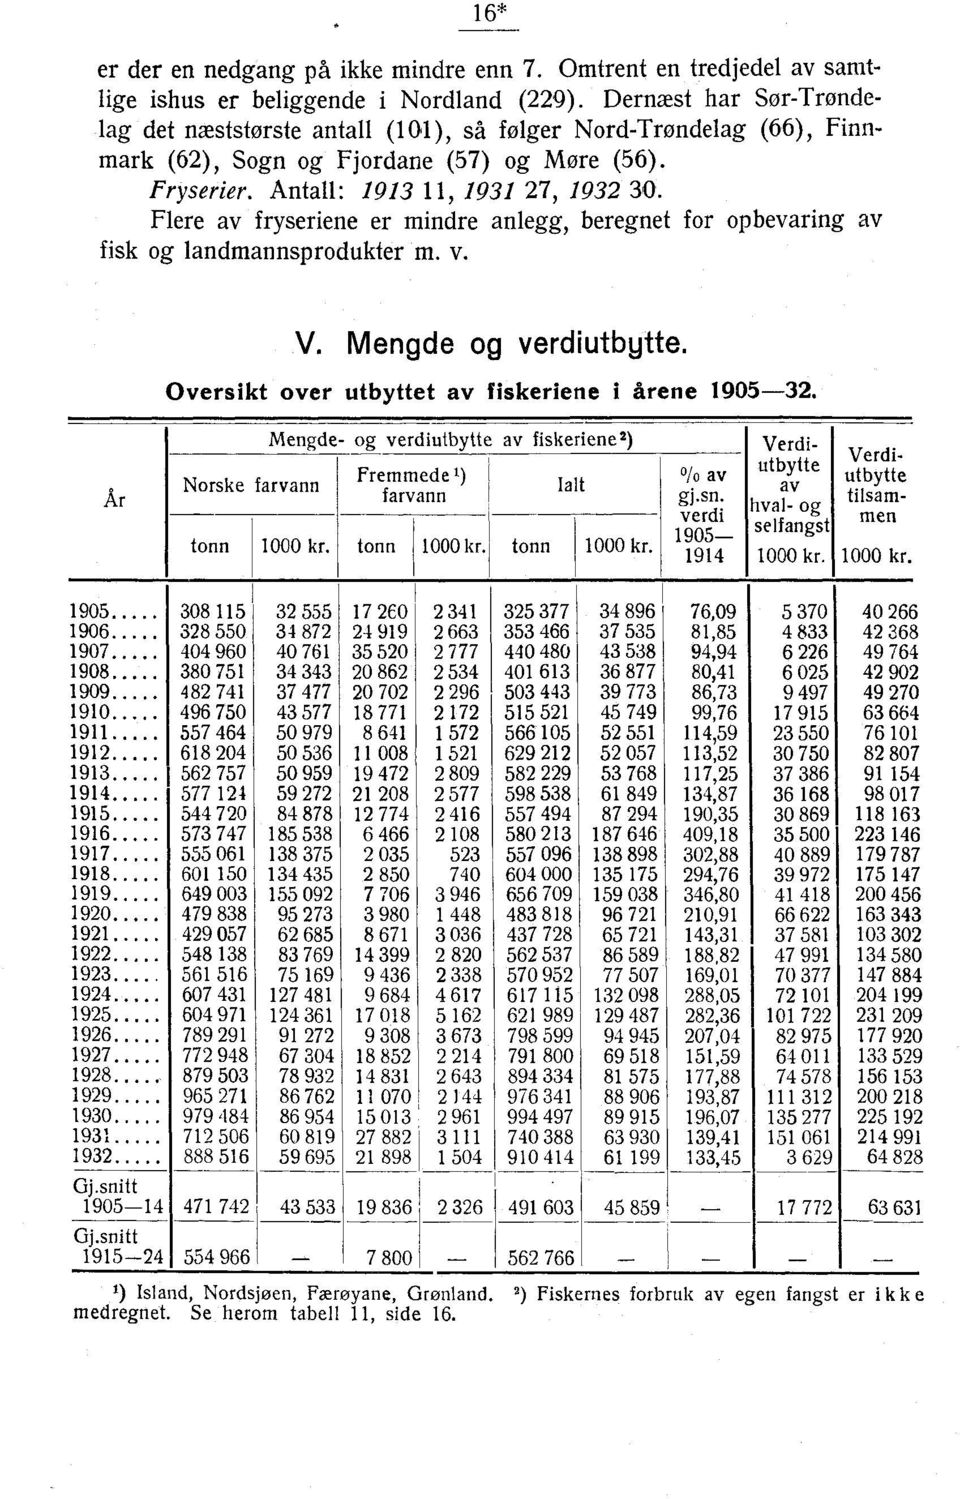 Flere av fryseriene er mindre anlegg, beregnet for opbevaring av fisk og landmannsprodukter m. v. V. og verdiutbytte. Oversikt over utbyttet av fiskeriene i årene 1905-32.